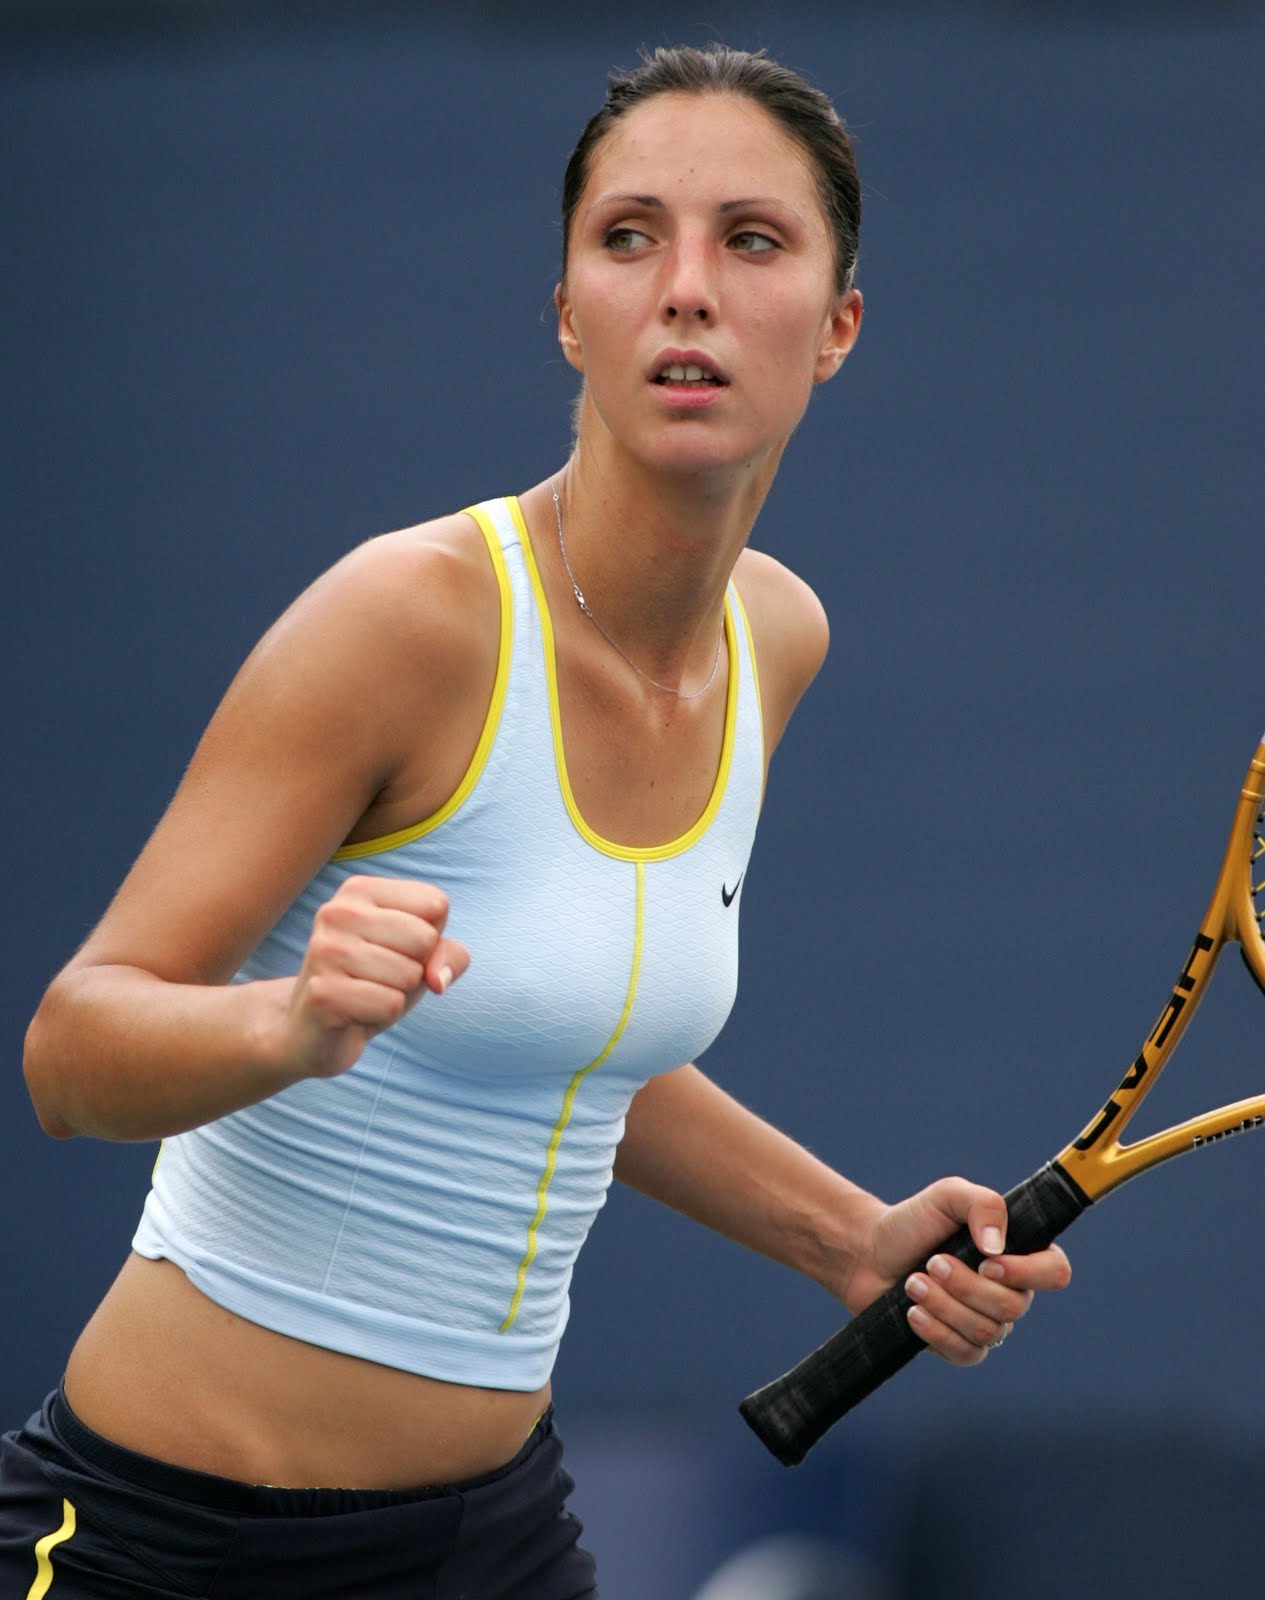 Waka Tennis Anastasia Myskina Pictures